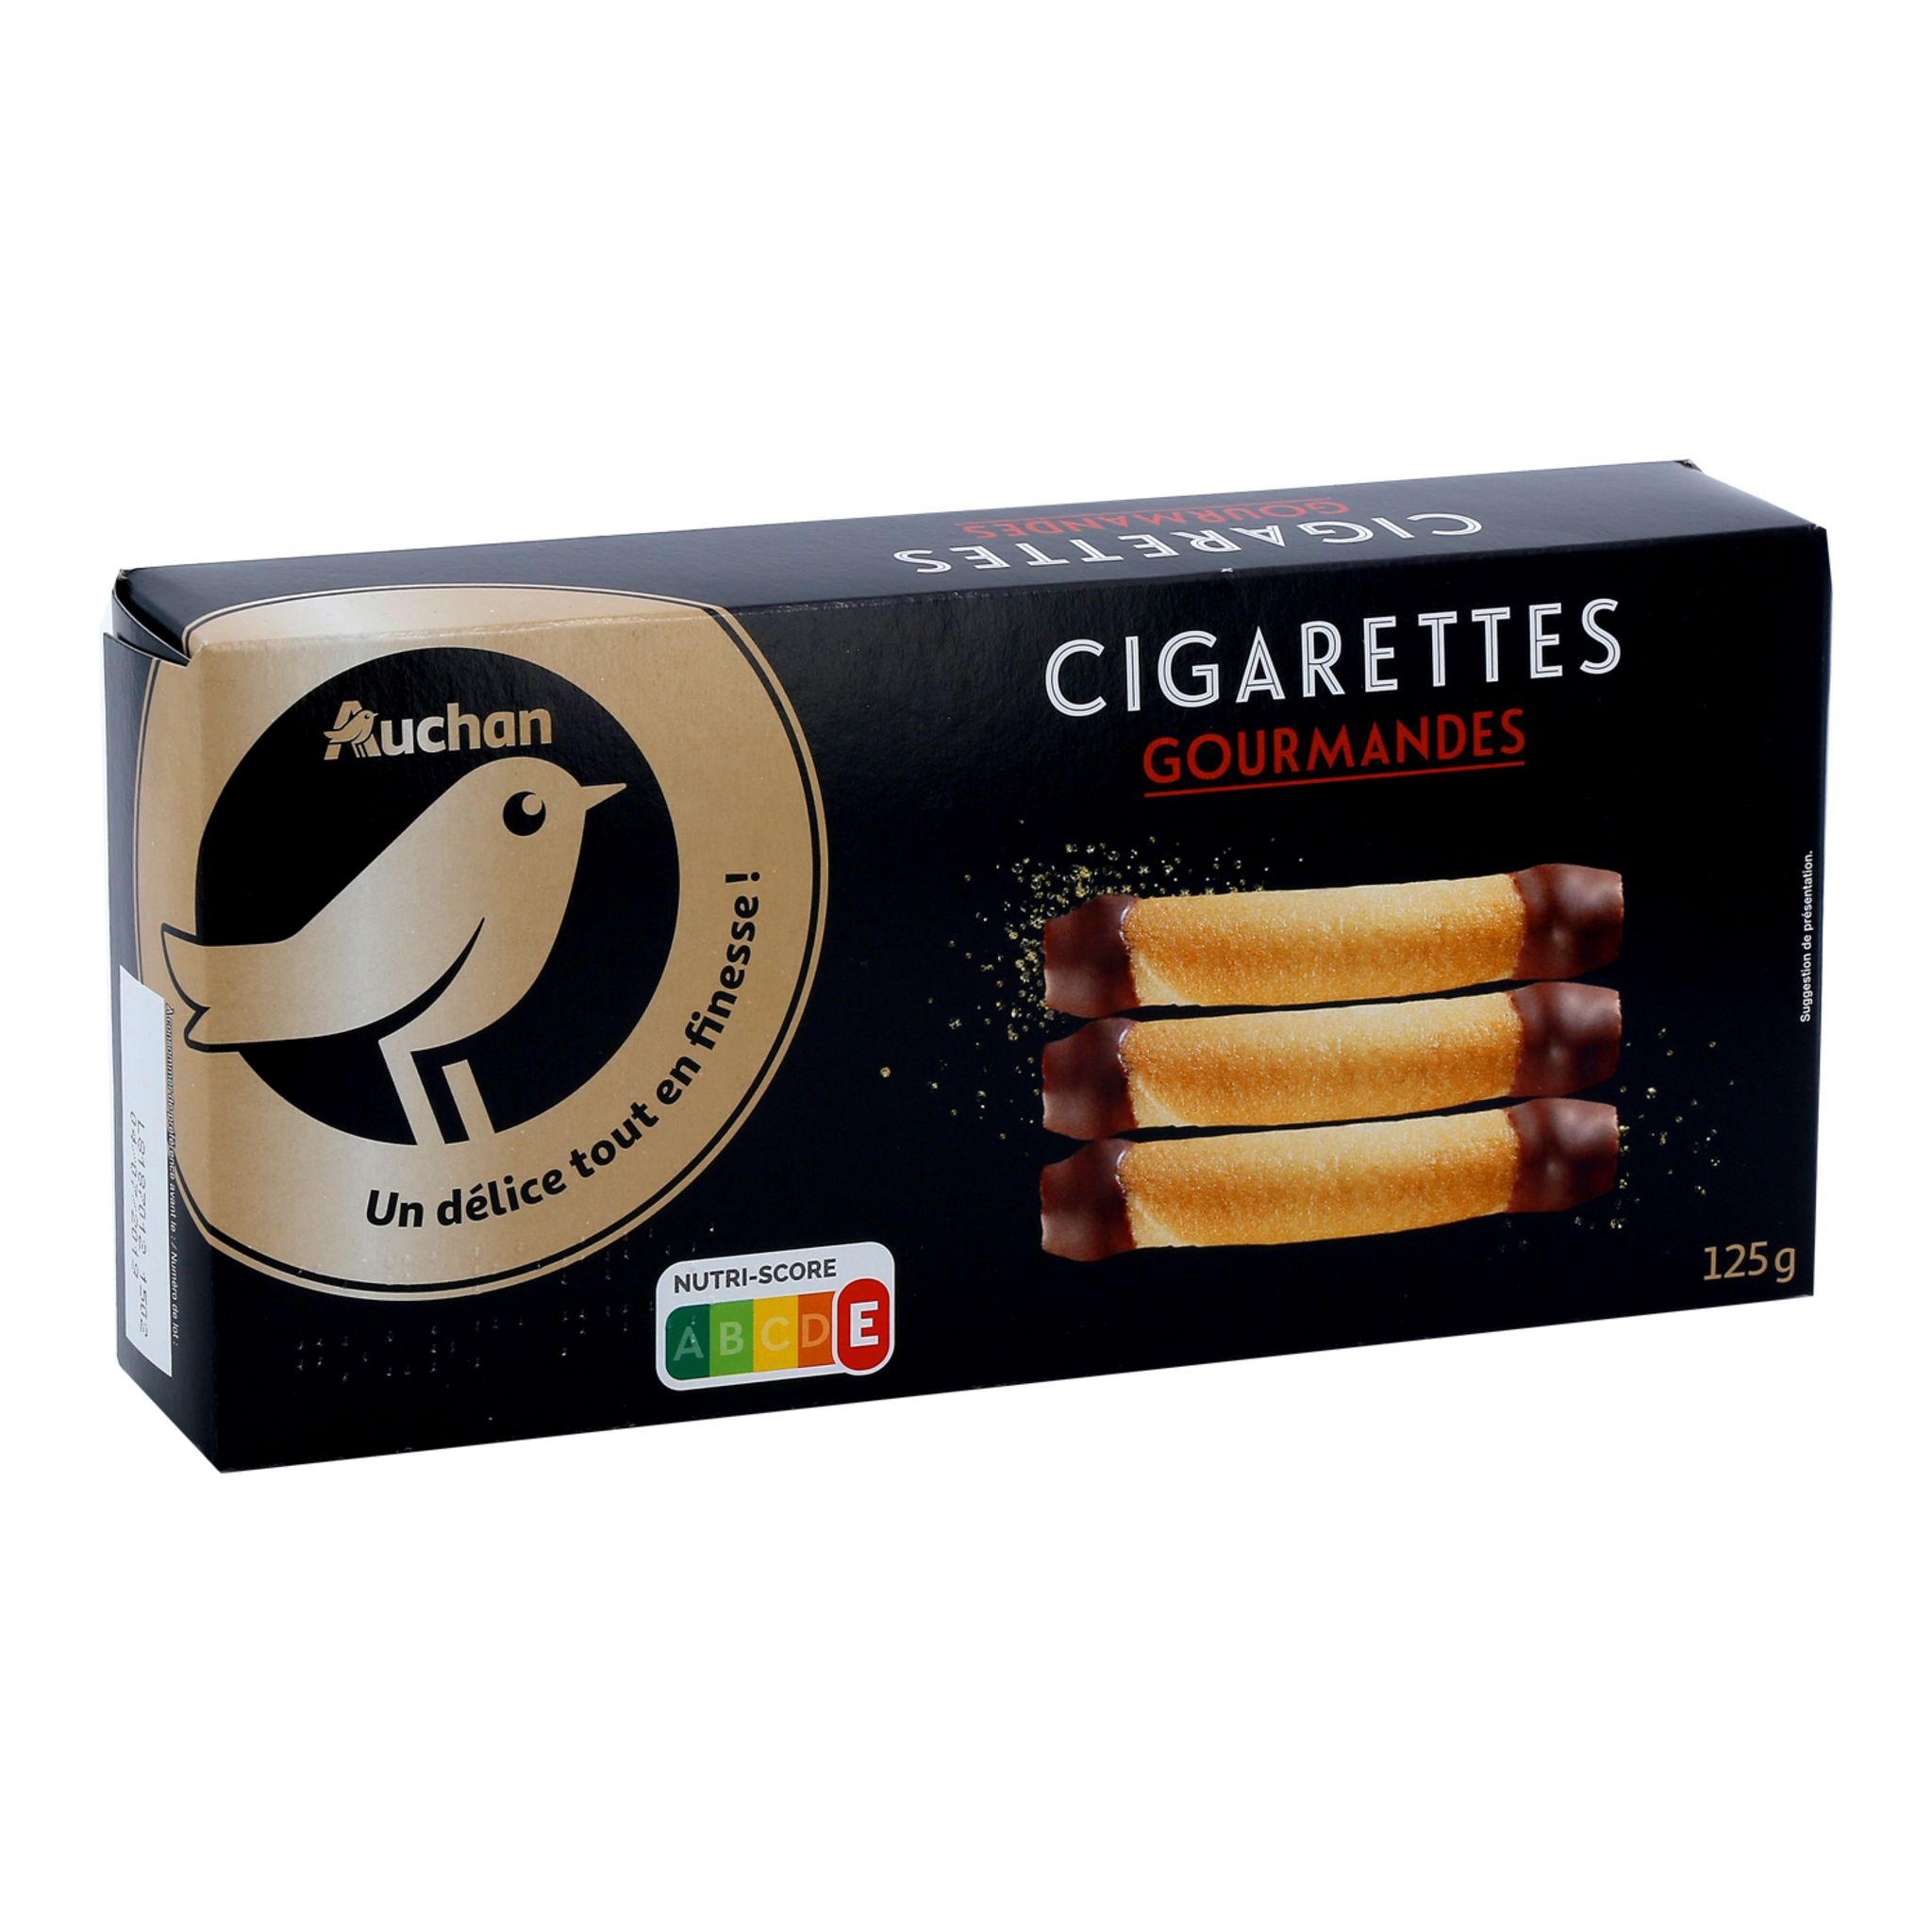 AUCHAN GOURMET Cigarettes gourmandes au chocolat 7 biscuits 125g pas cher 